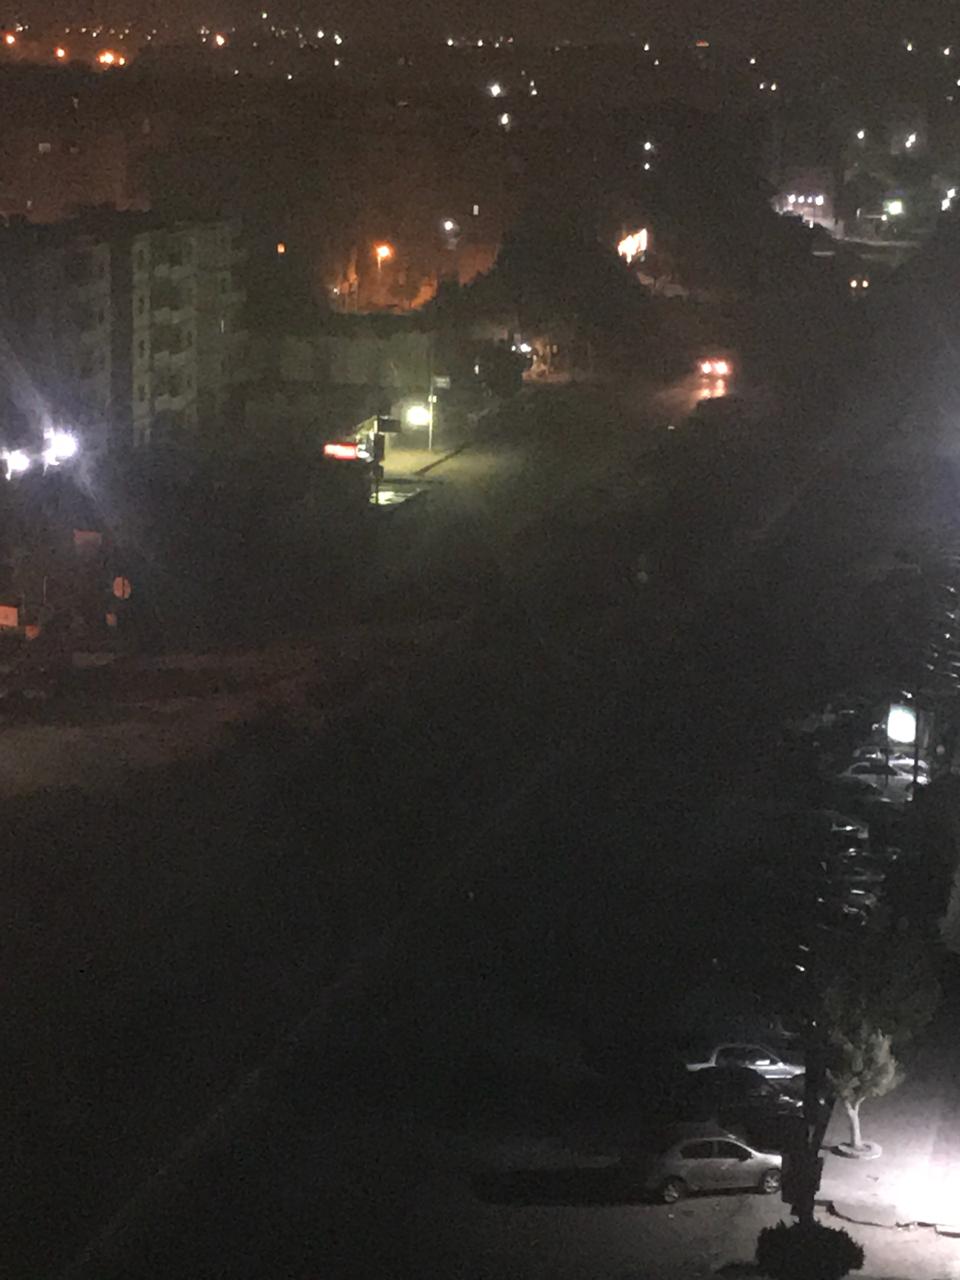 شارع  أحمد الزمر فى مدينة نصر غارق فى الظلام الدامس (4)